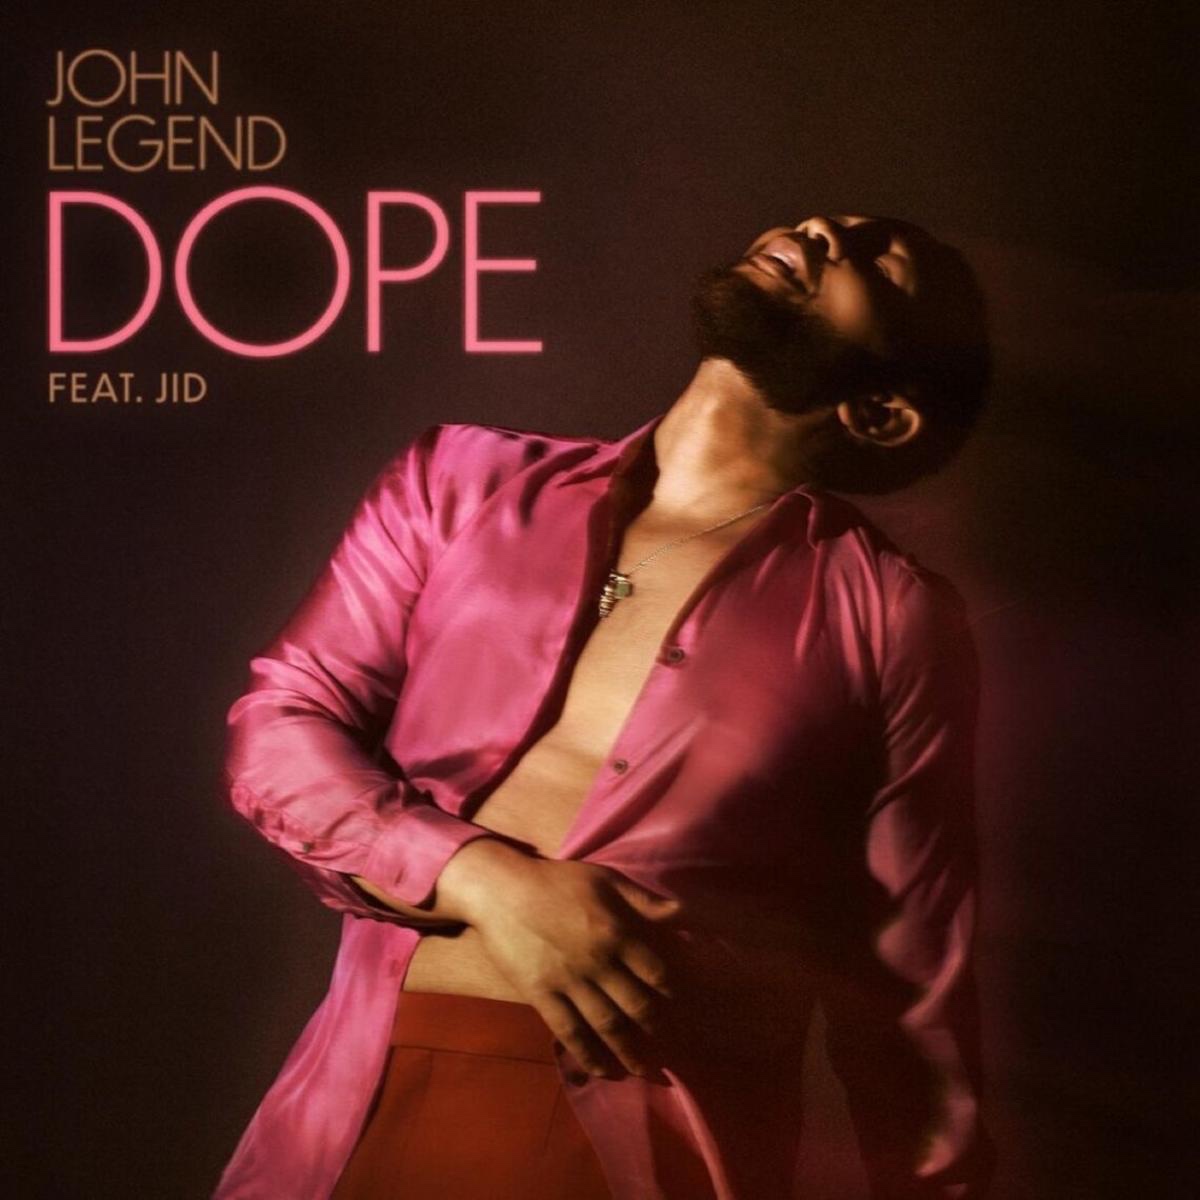 John Legend & J.I.D. Join Forces For “Dope”